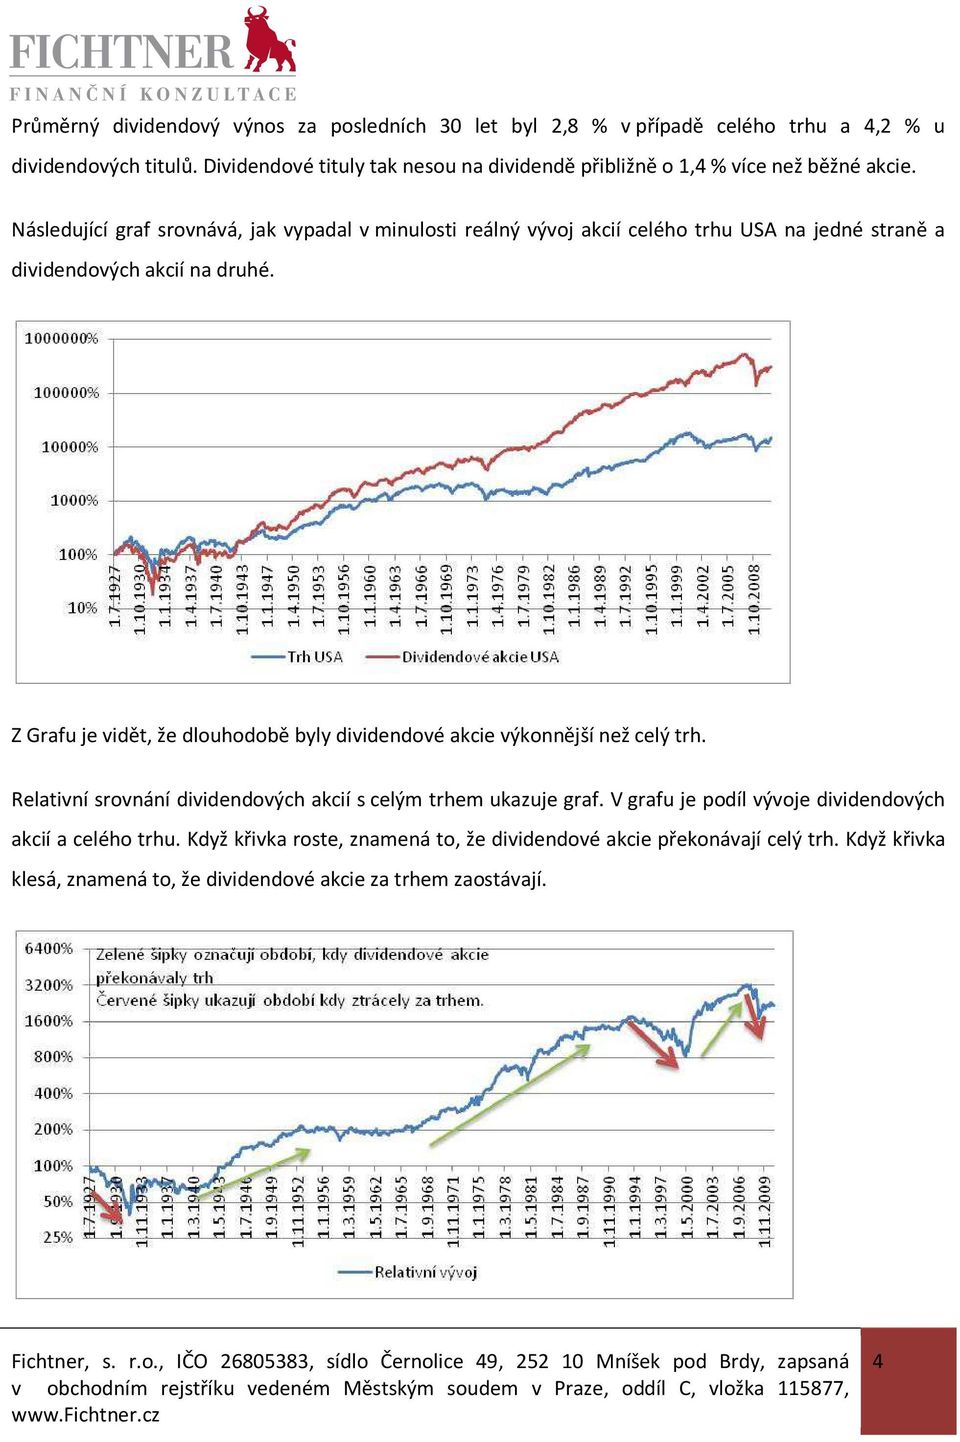 Následující graf srovnává, jak vypadal v minulosti reálný vývoj akcií celého trhu USA na jedné straně a dividendových akcií na druhé.